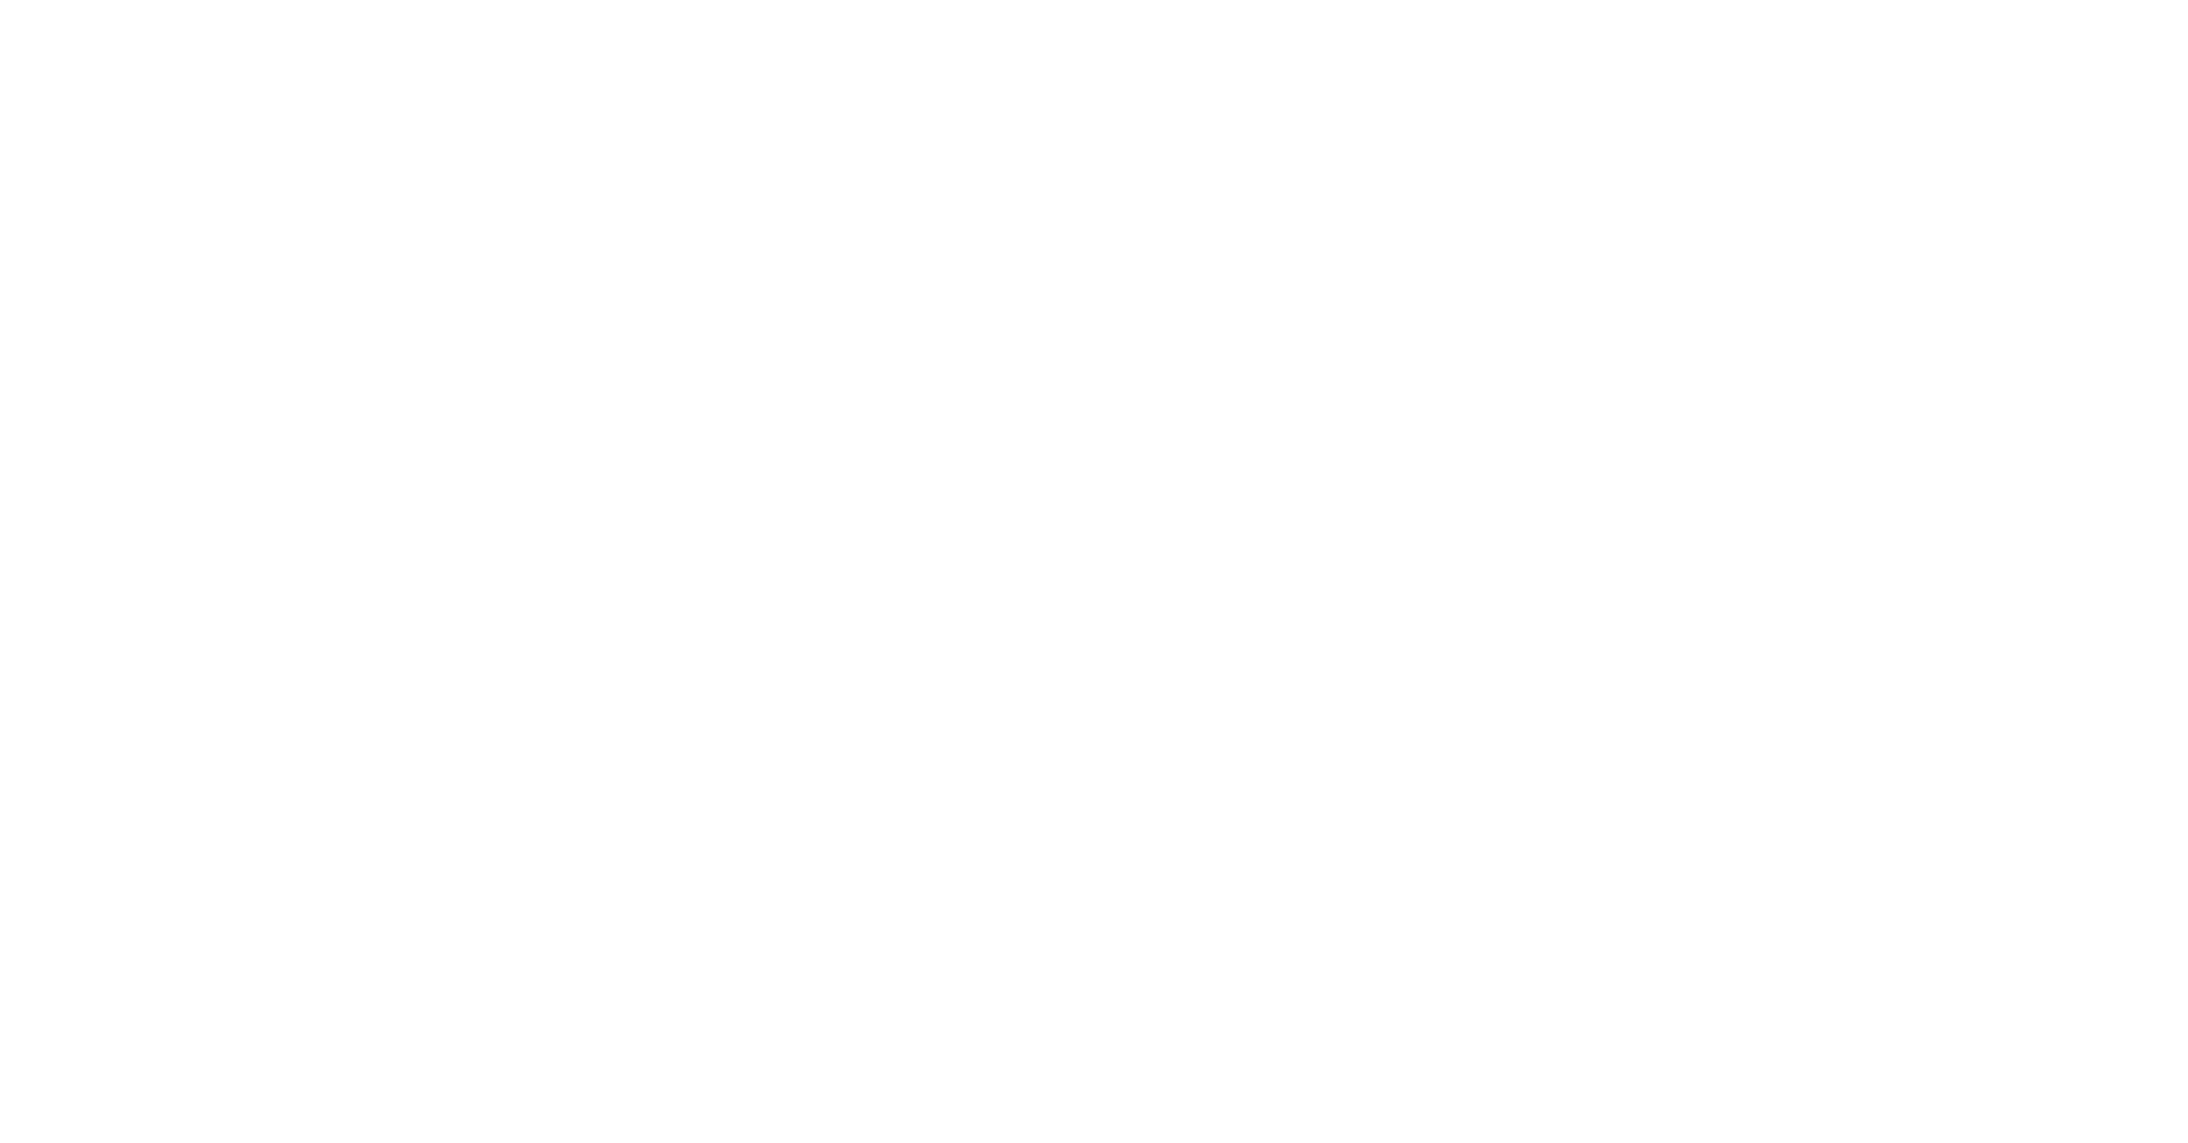 Missouri CASA Association